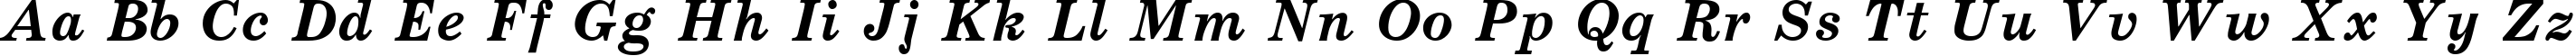 Пример написания английского алфавита шрифтом SchoolBook BoldItalic Cyrillic